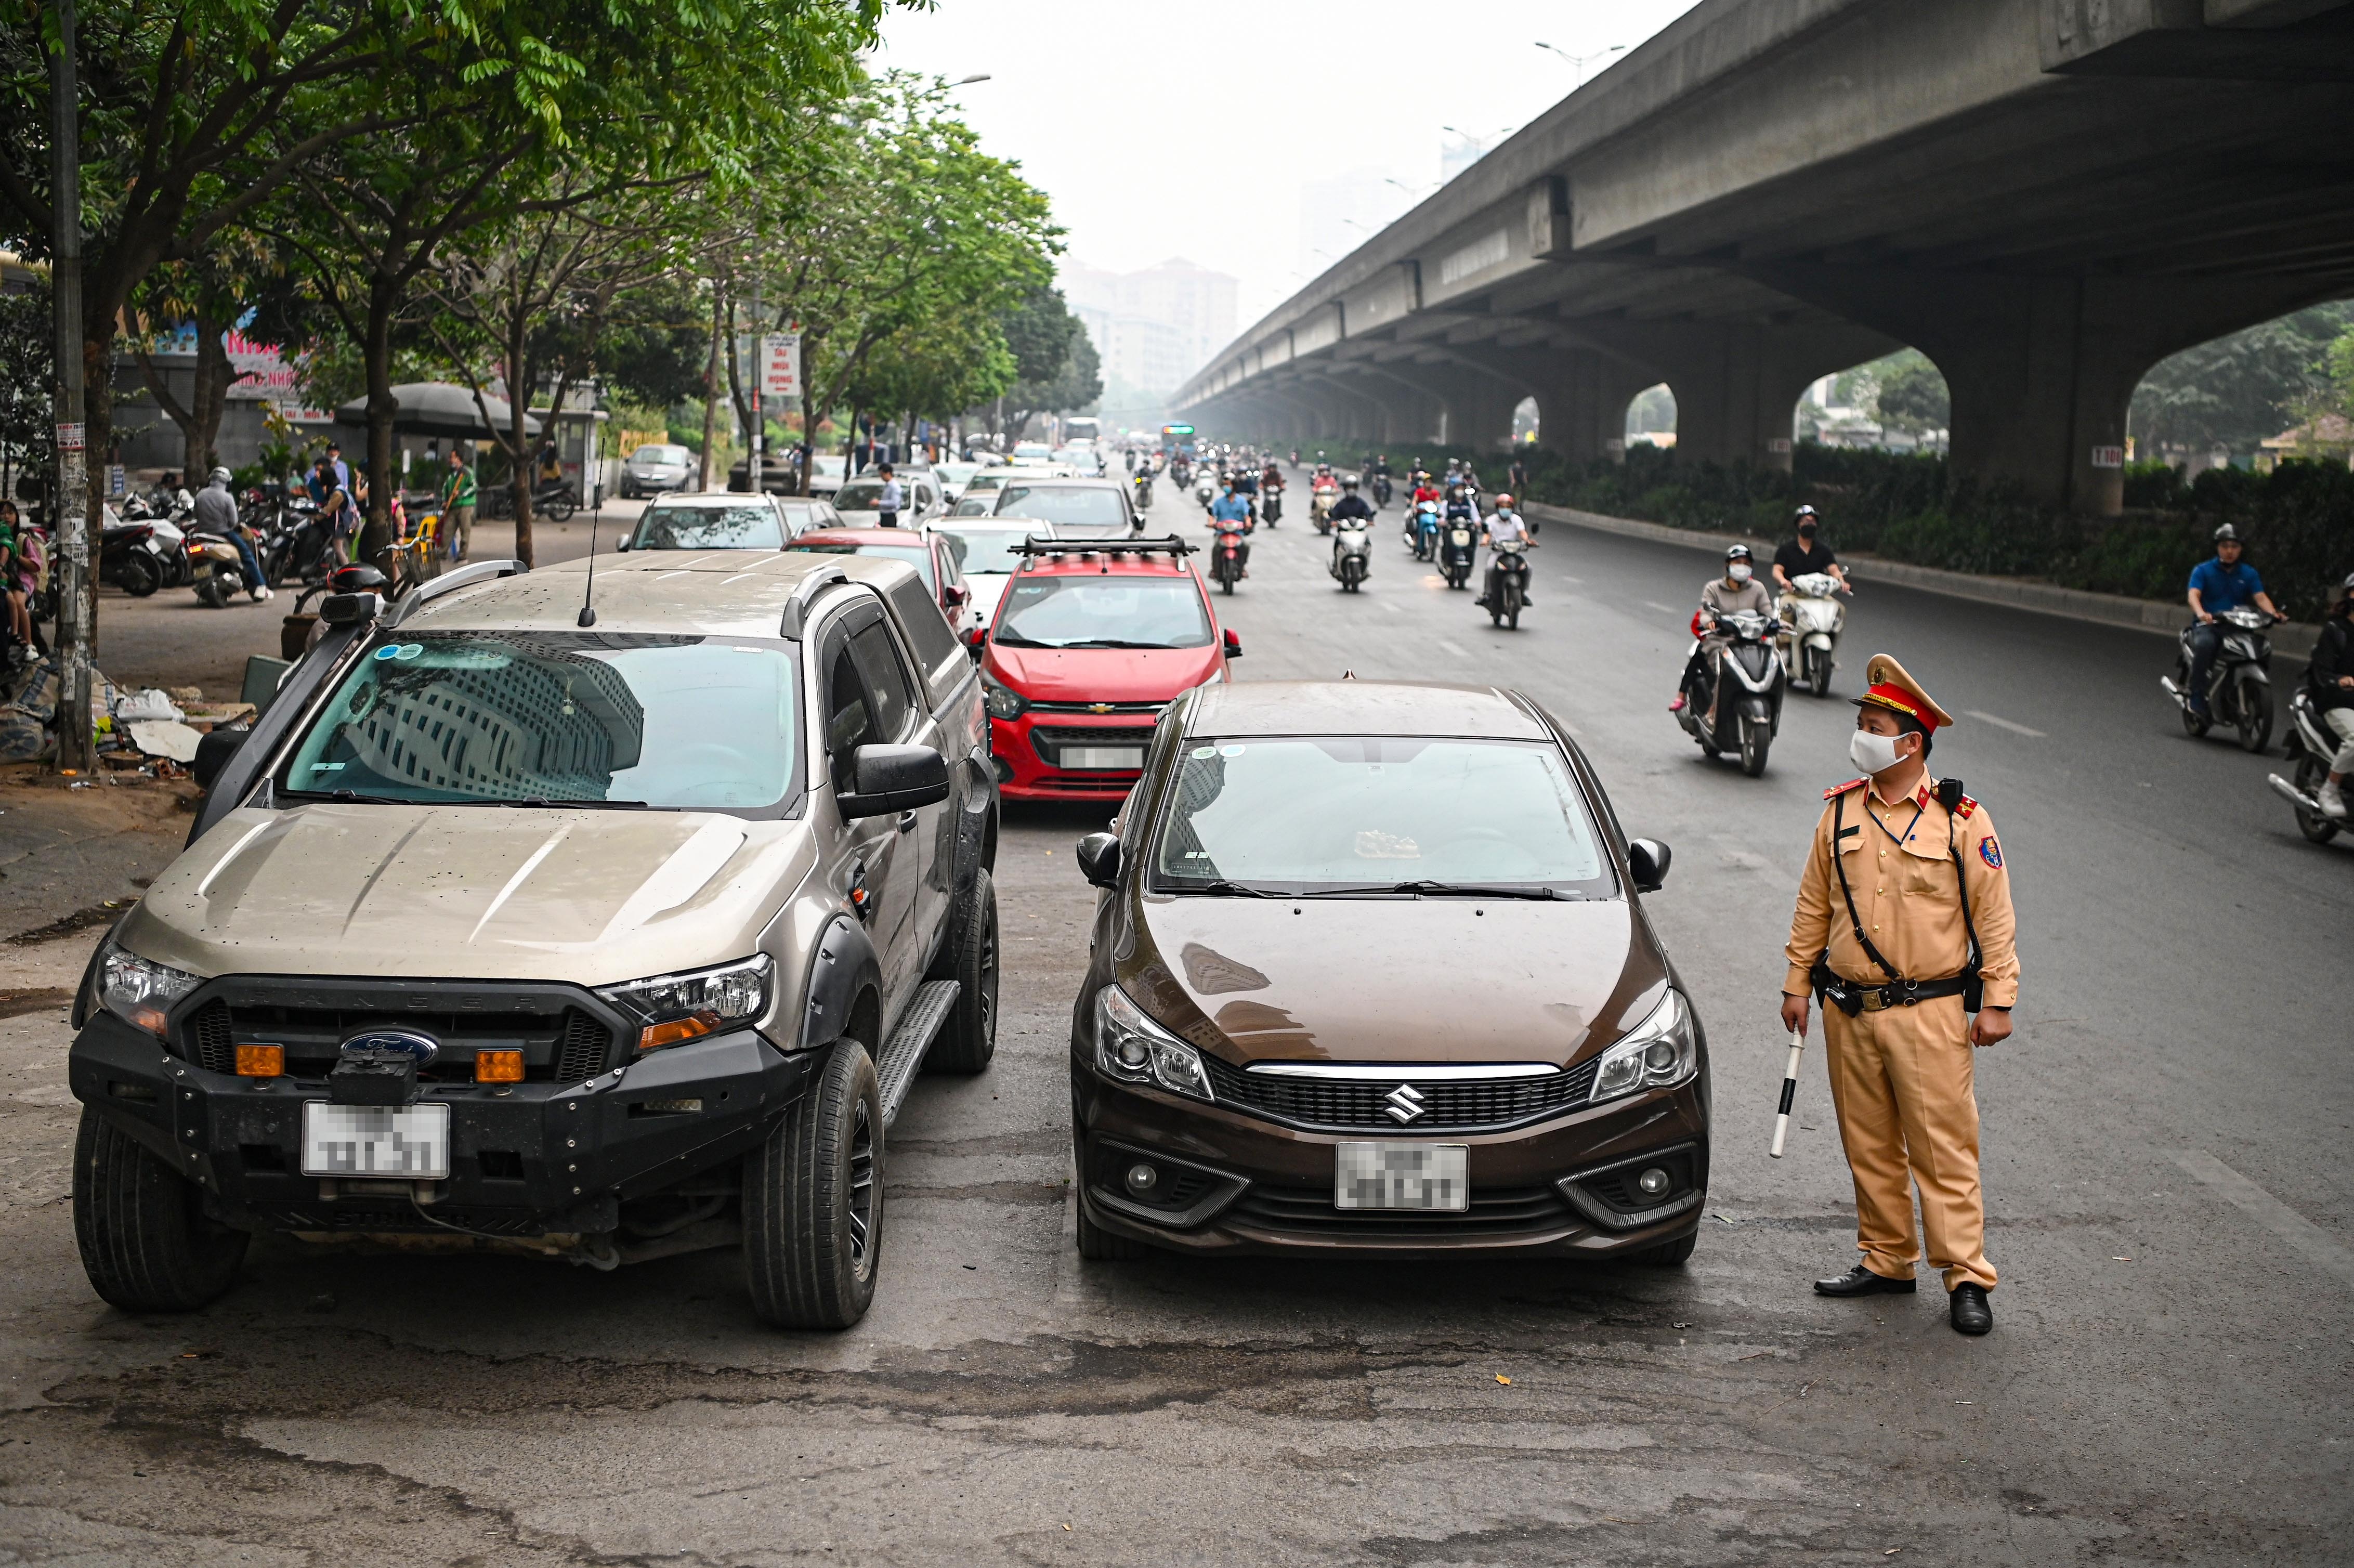 Đỗ xe ở lòng đường Hà Nội, tài xế xếp hàng dài chờ bị xử phạt - ảnh 14